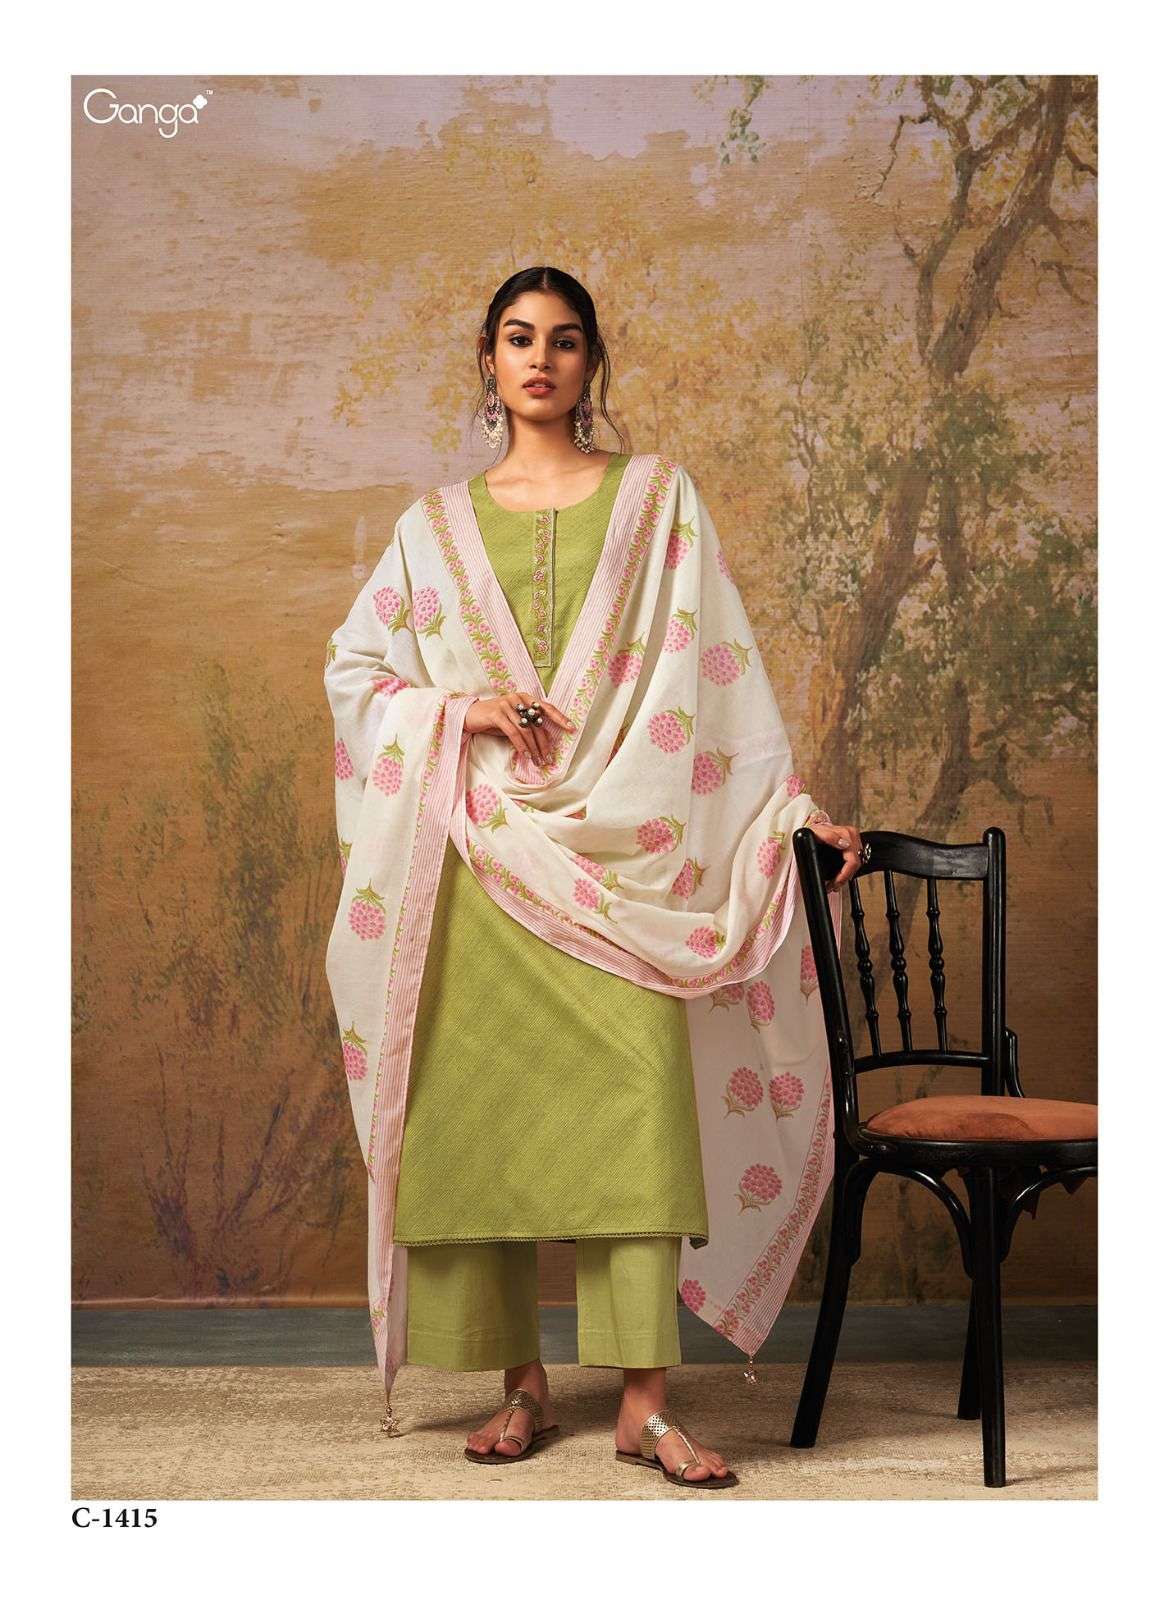 ganga aisha premium cotton unstich dress material collection wholesale price surat